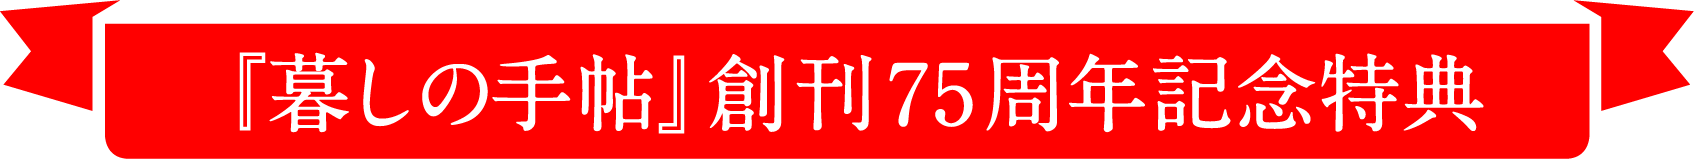 『暮しの手帖』創刊75周年記念特典